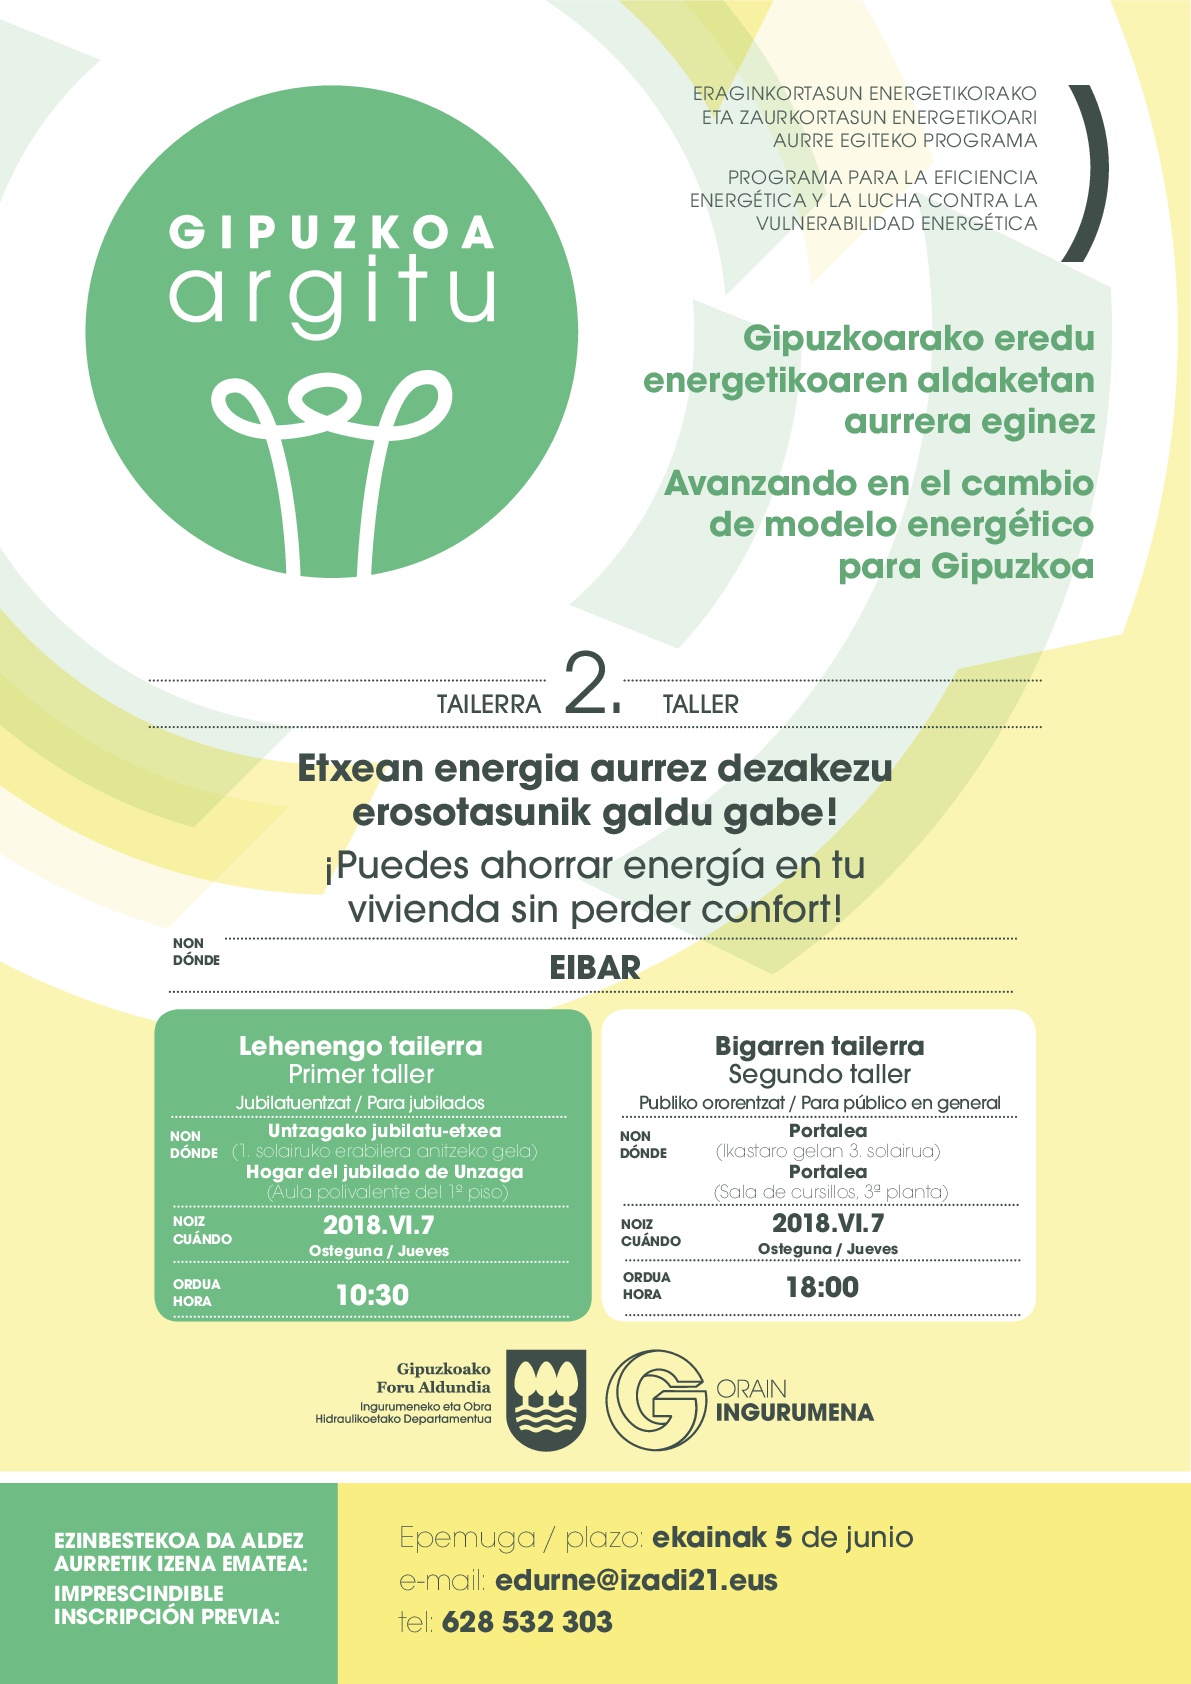 Talleres Argitu: Sesiones prácticas dirigidas a ahorrar energía y dinero sin perder confort en Eibar